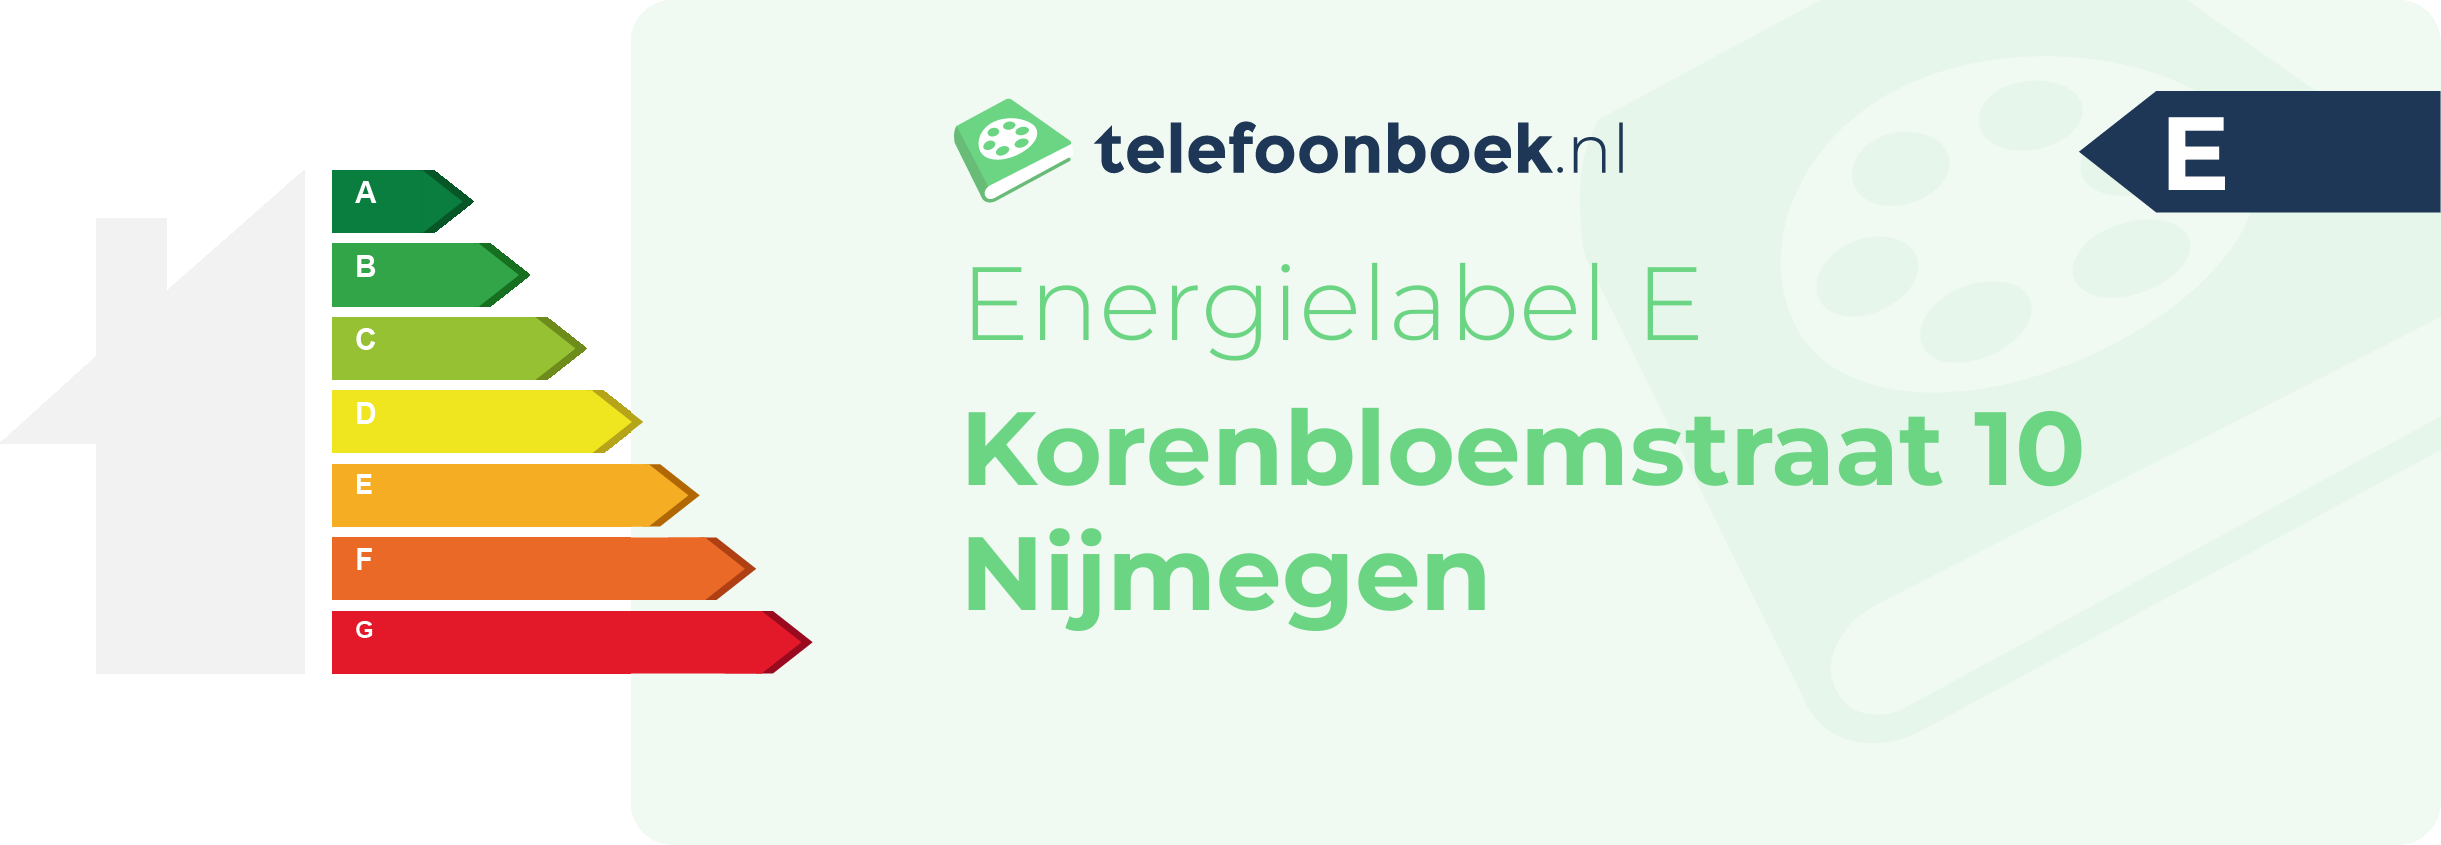 Energielabel Korenbloemstraat 10 Nijmegen